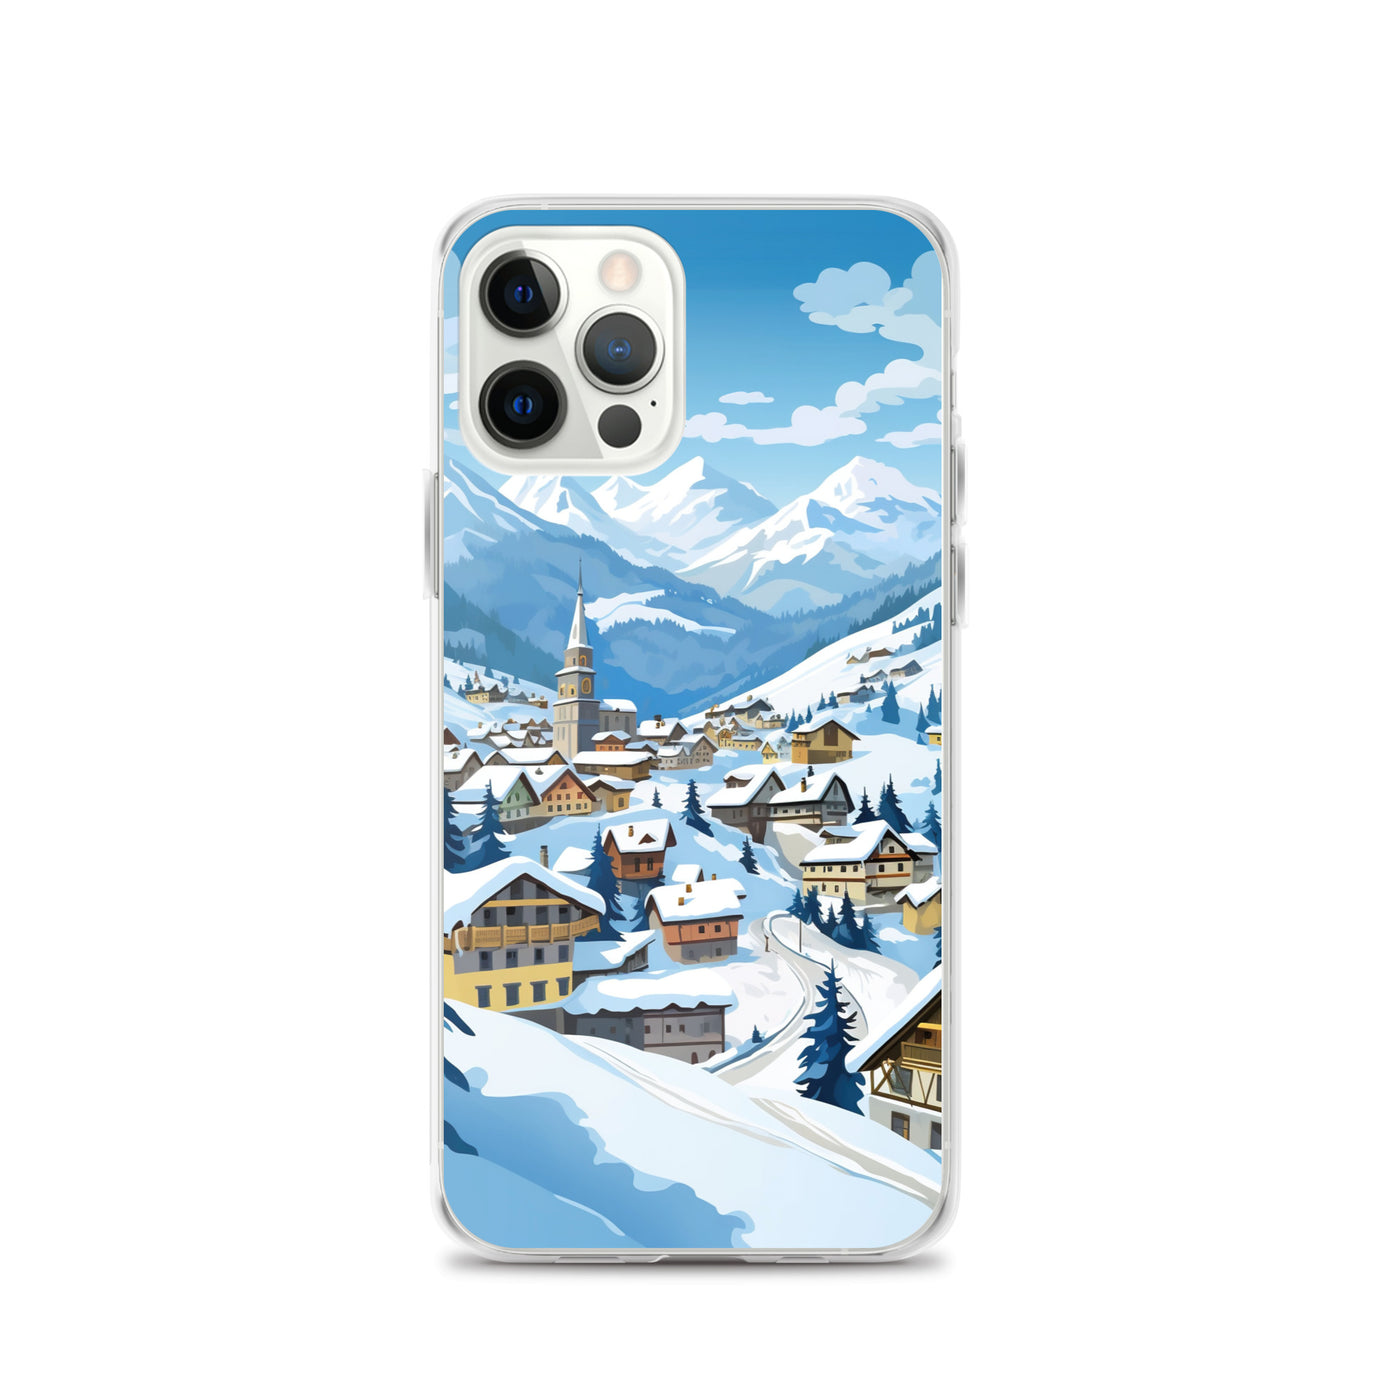 Kitzbühl - Berge und Schnee - Landschaftsmalerei - iPhone Schutzhülle (durchsichtig) ski xxx iPhone 12 Pro